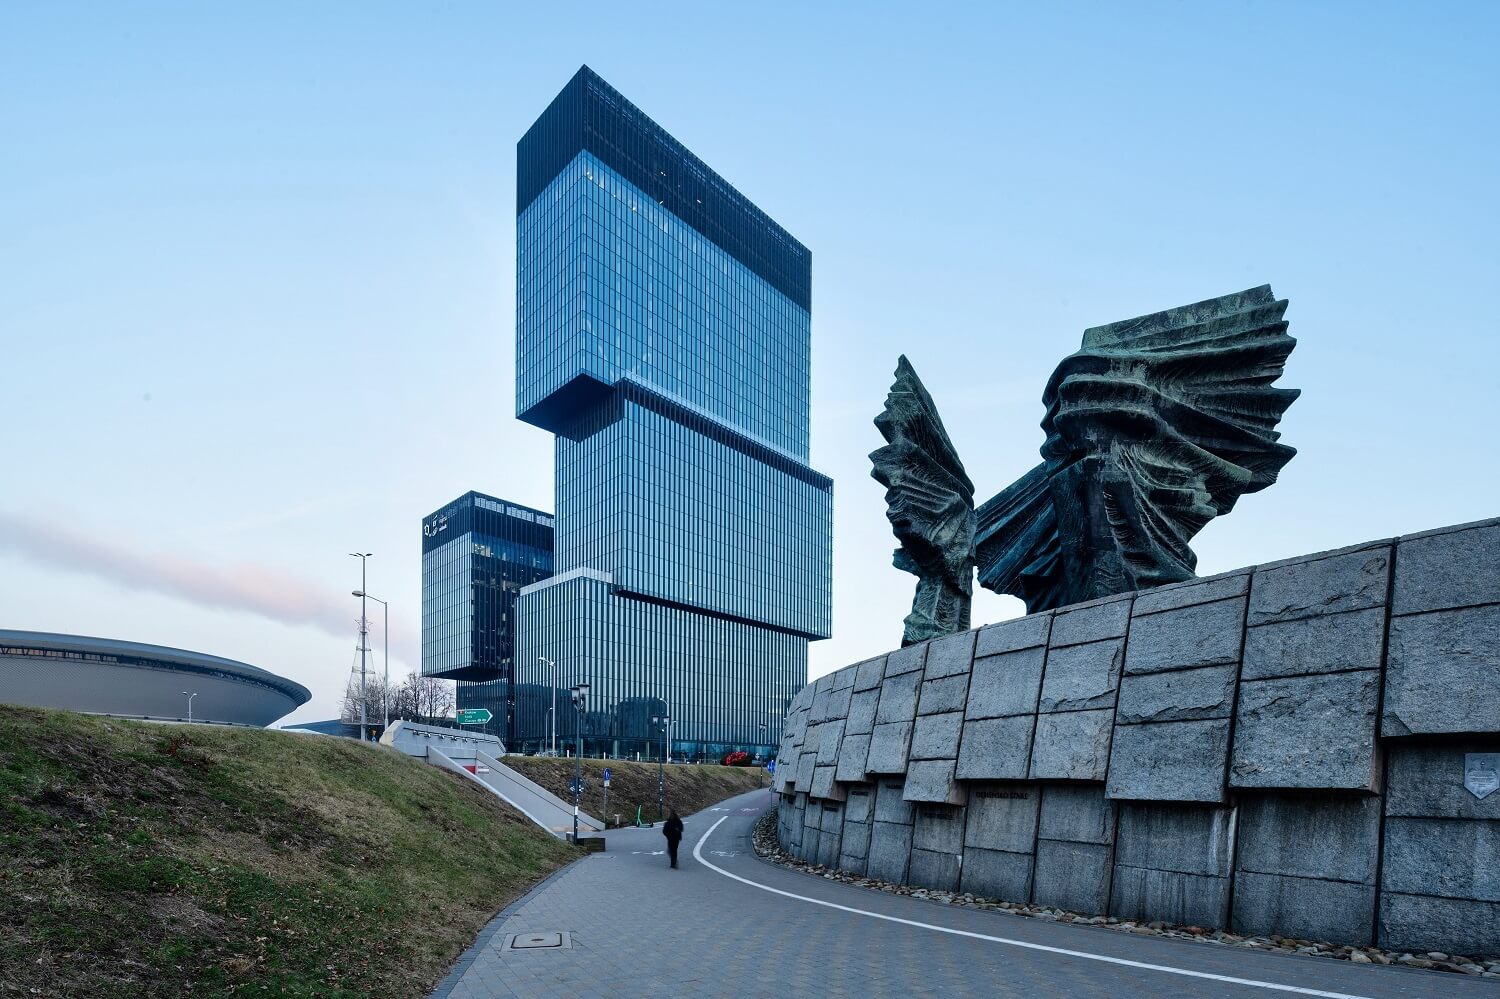 Biurowiec .KTW wyznaczył nową skalę dla panoramy Katowic, stając się najwyższym budynkiem na Śląsku